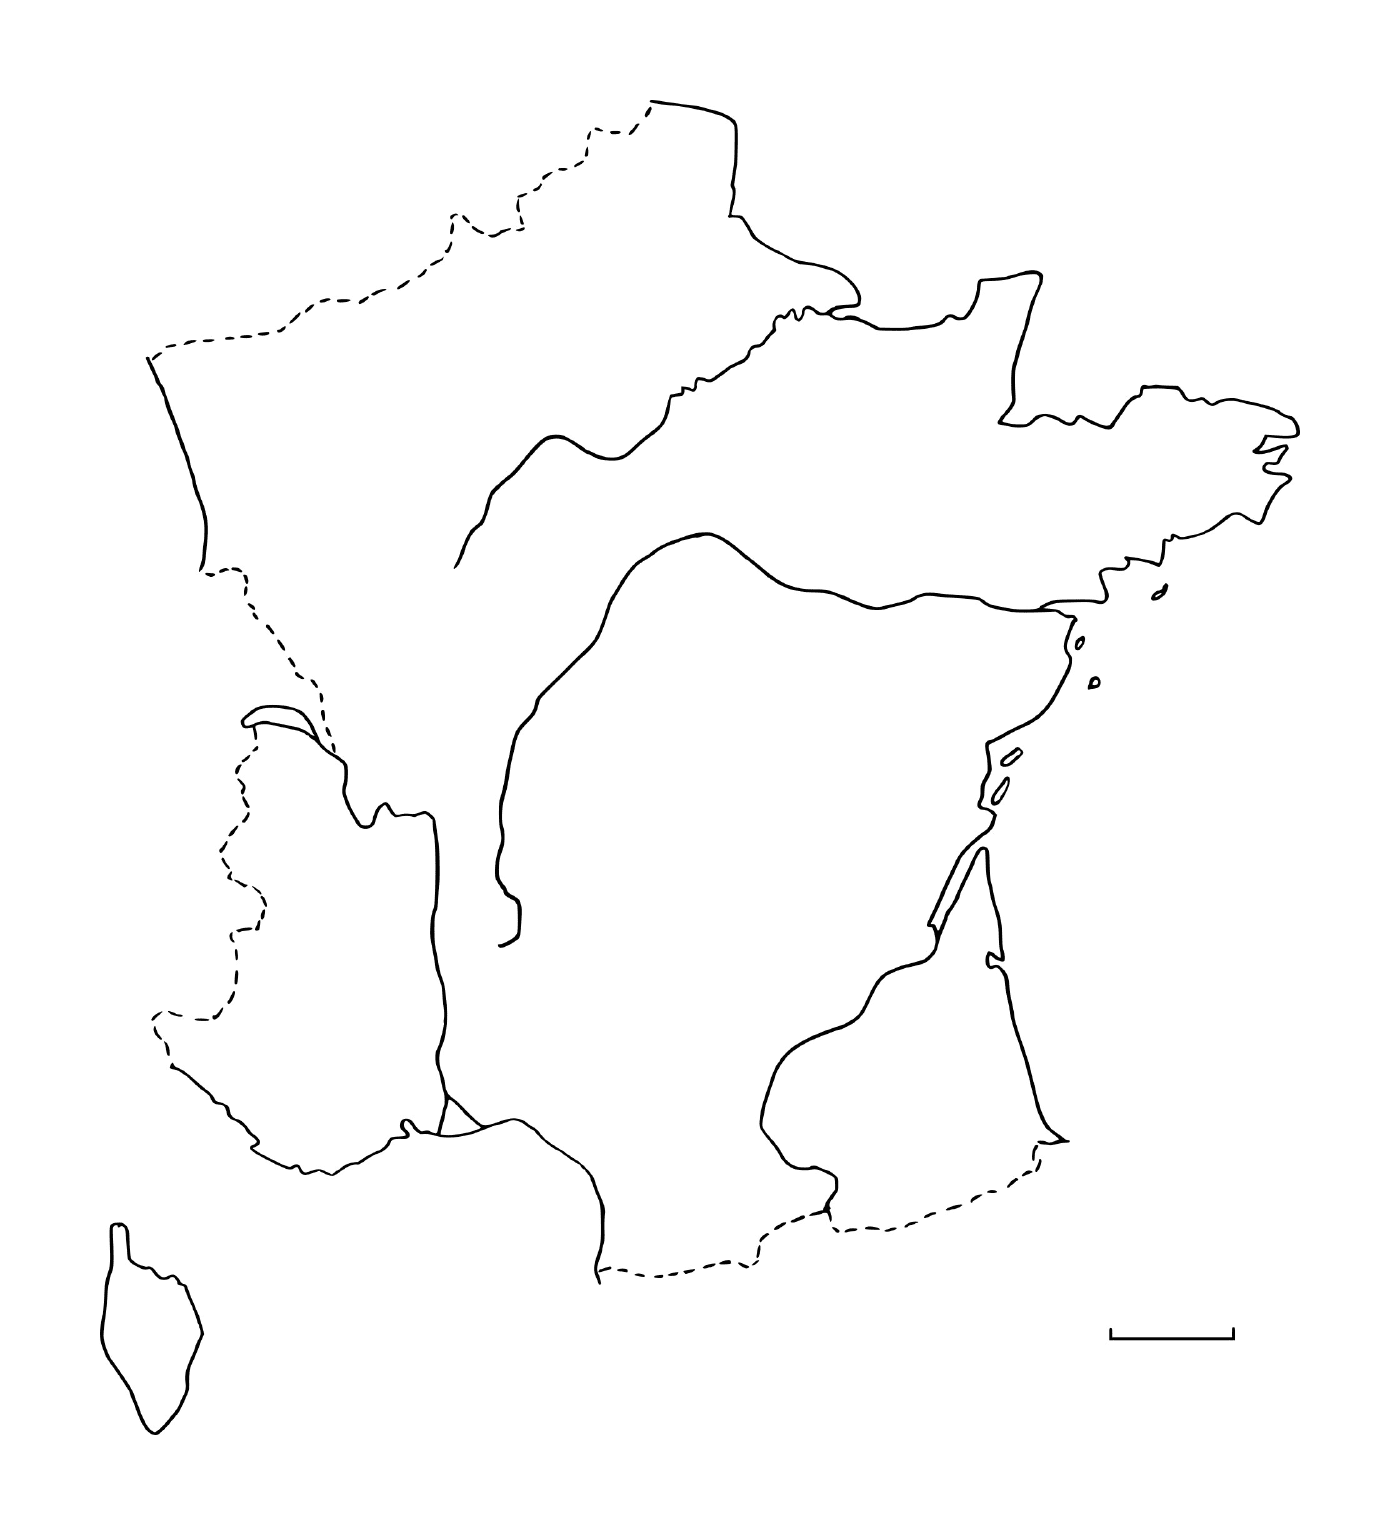  फ्रांस का नक्शा 